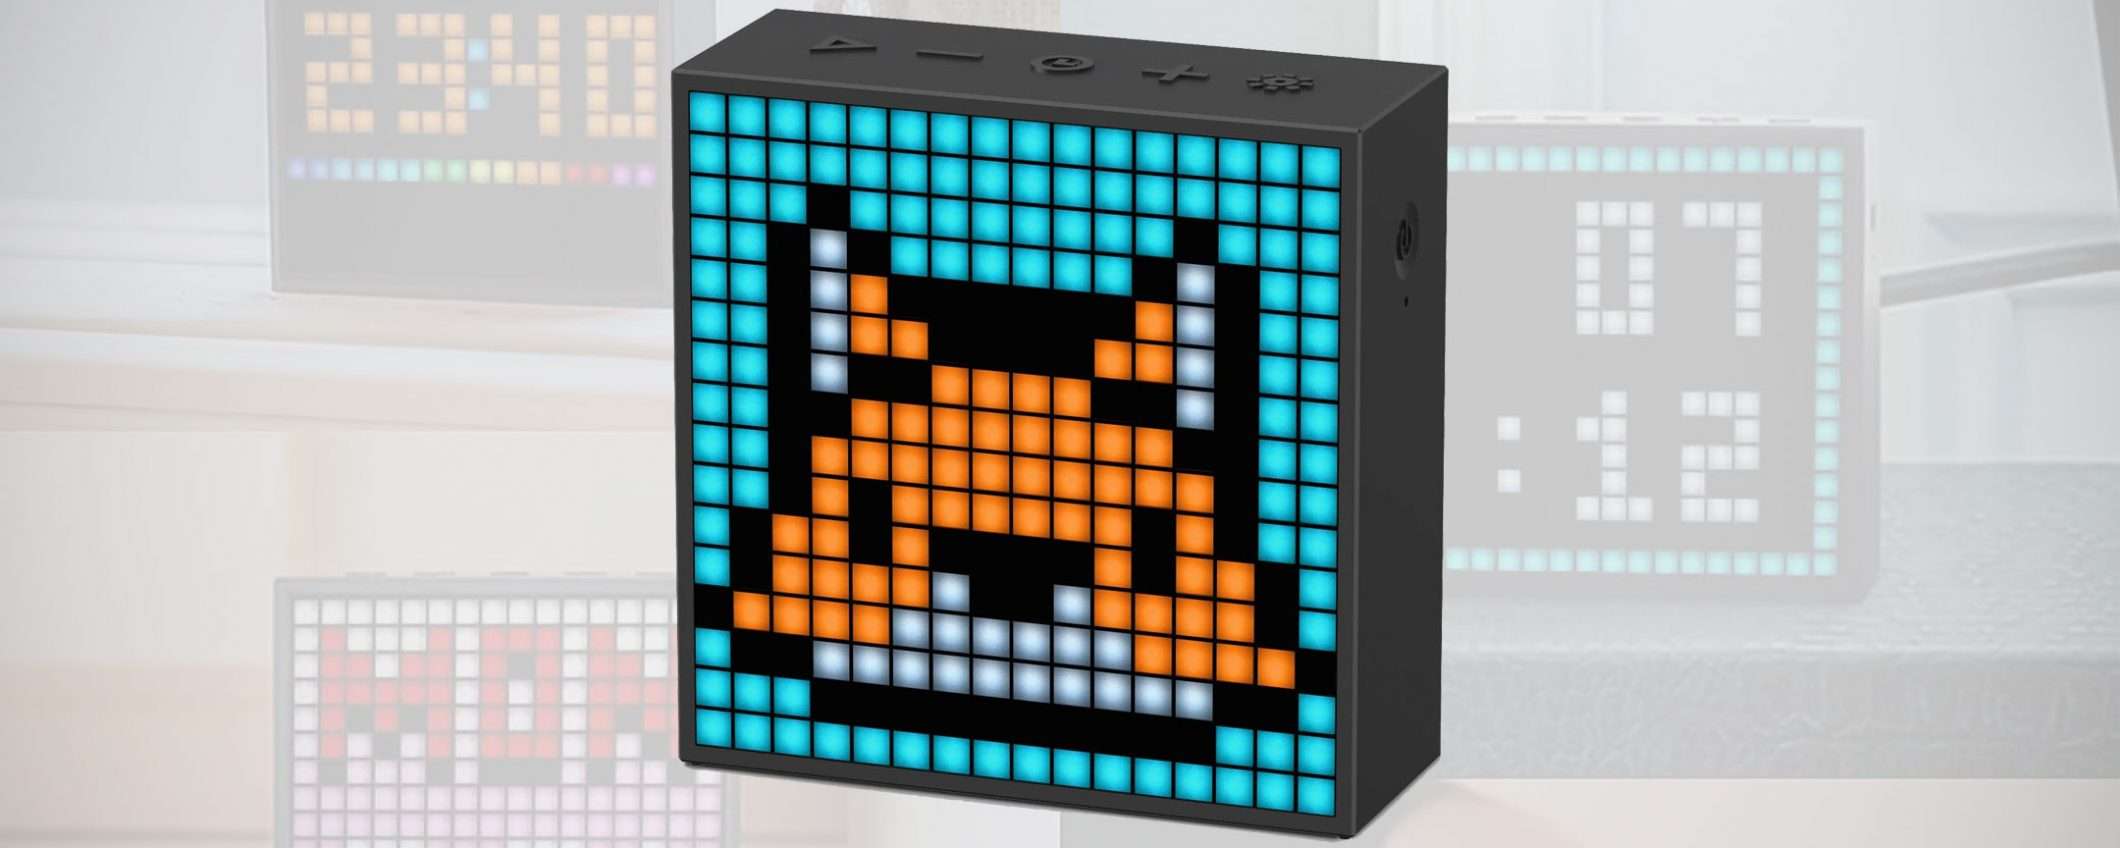 Speaker BT con pannello LED pixel art: sconto x2